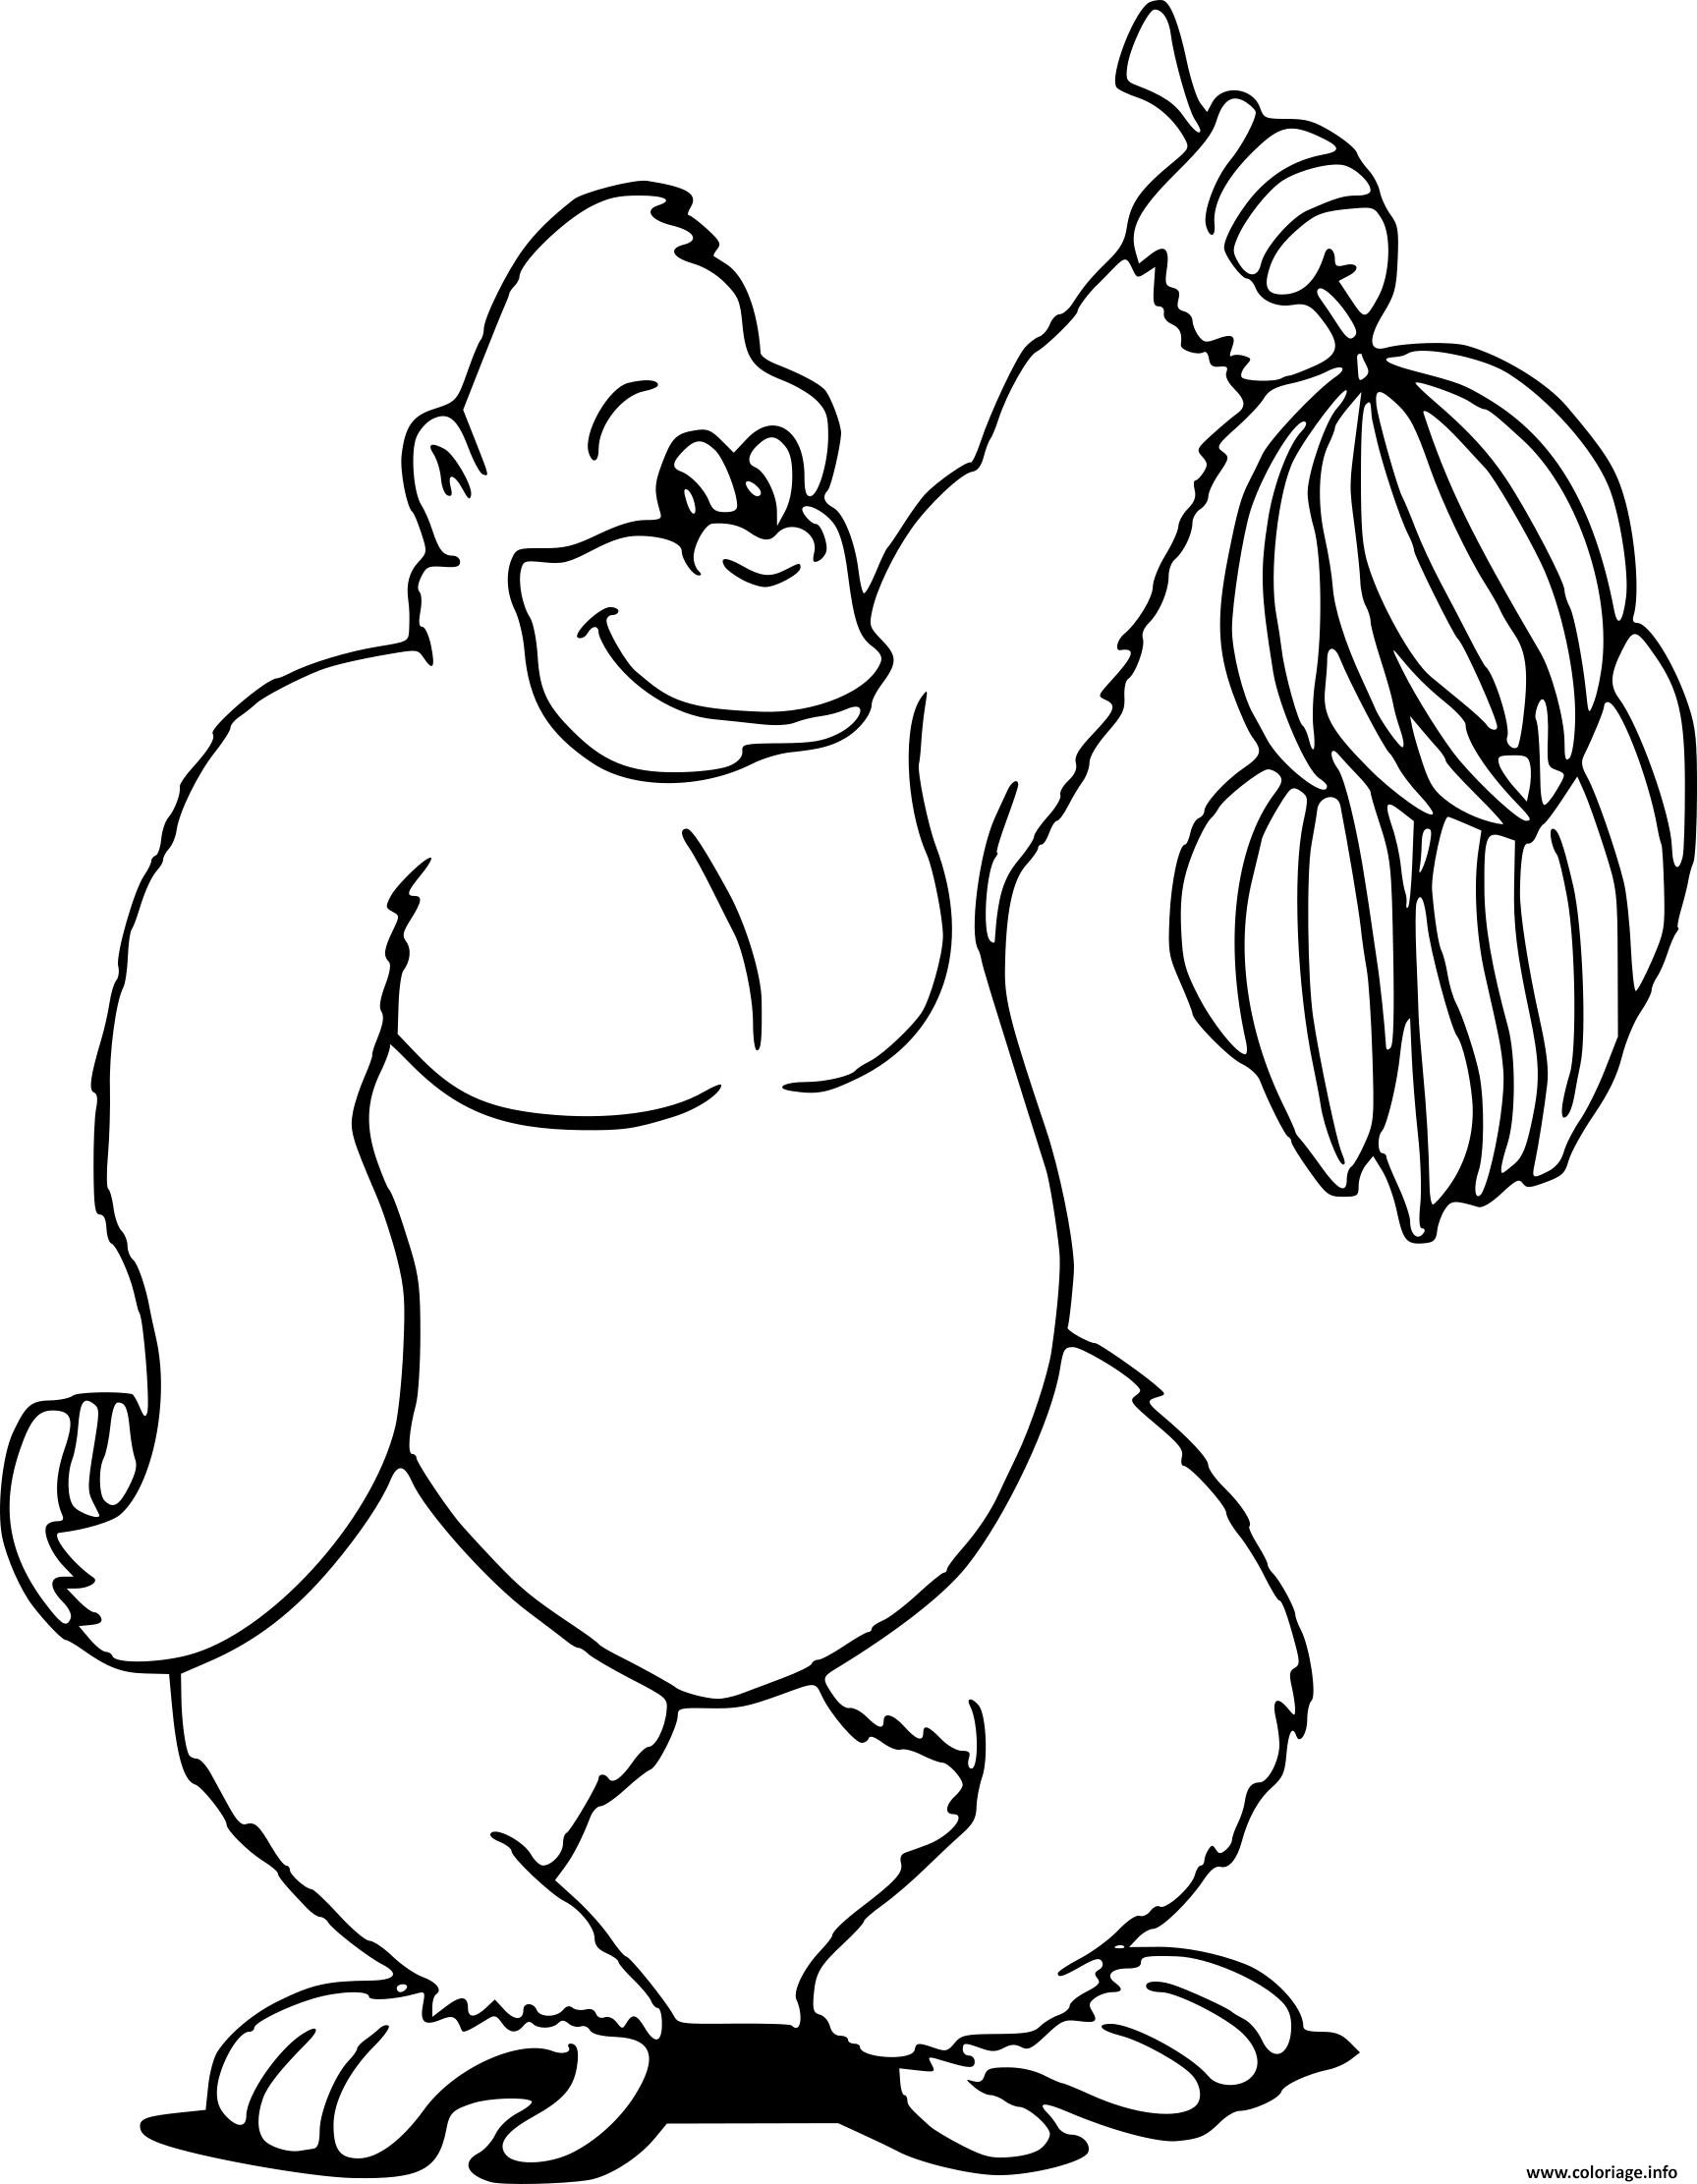 Coloriage Gorille Aime Les Bananes De La Jungle Dessin Animaux De La